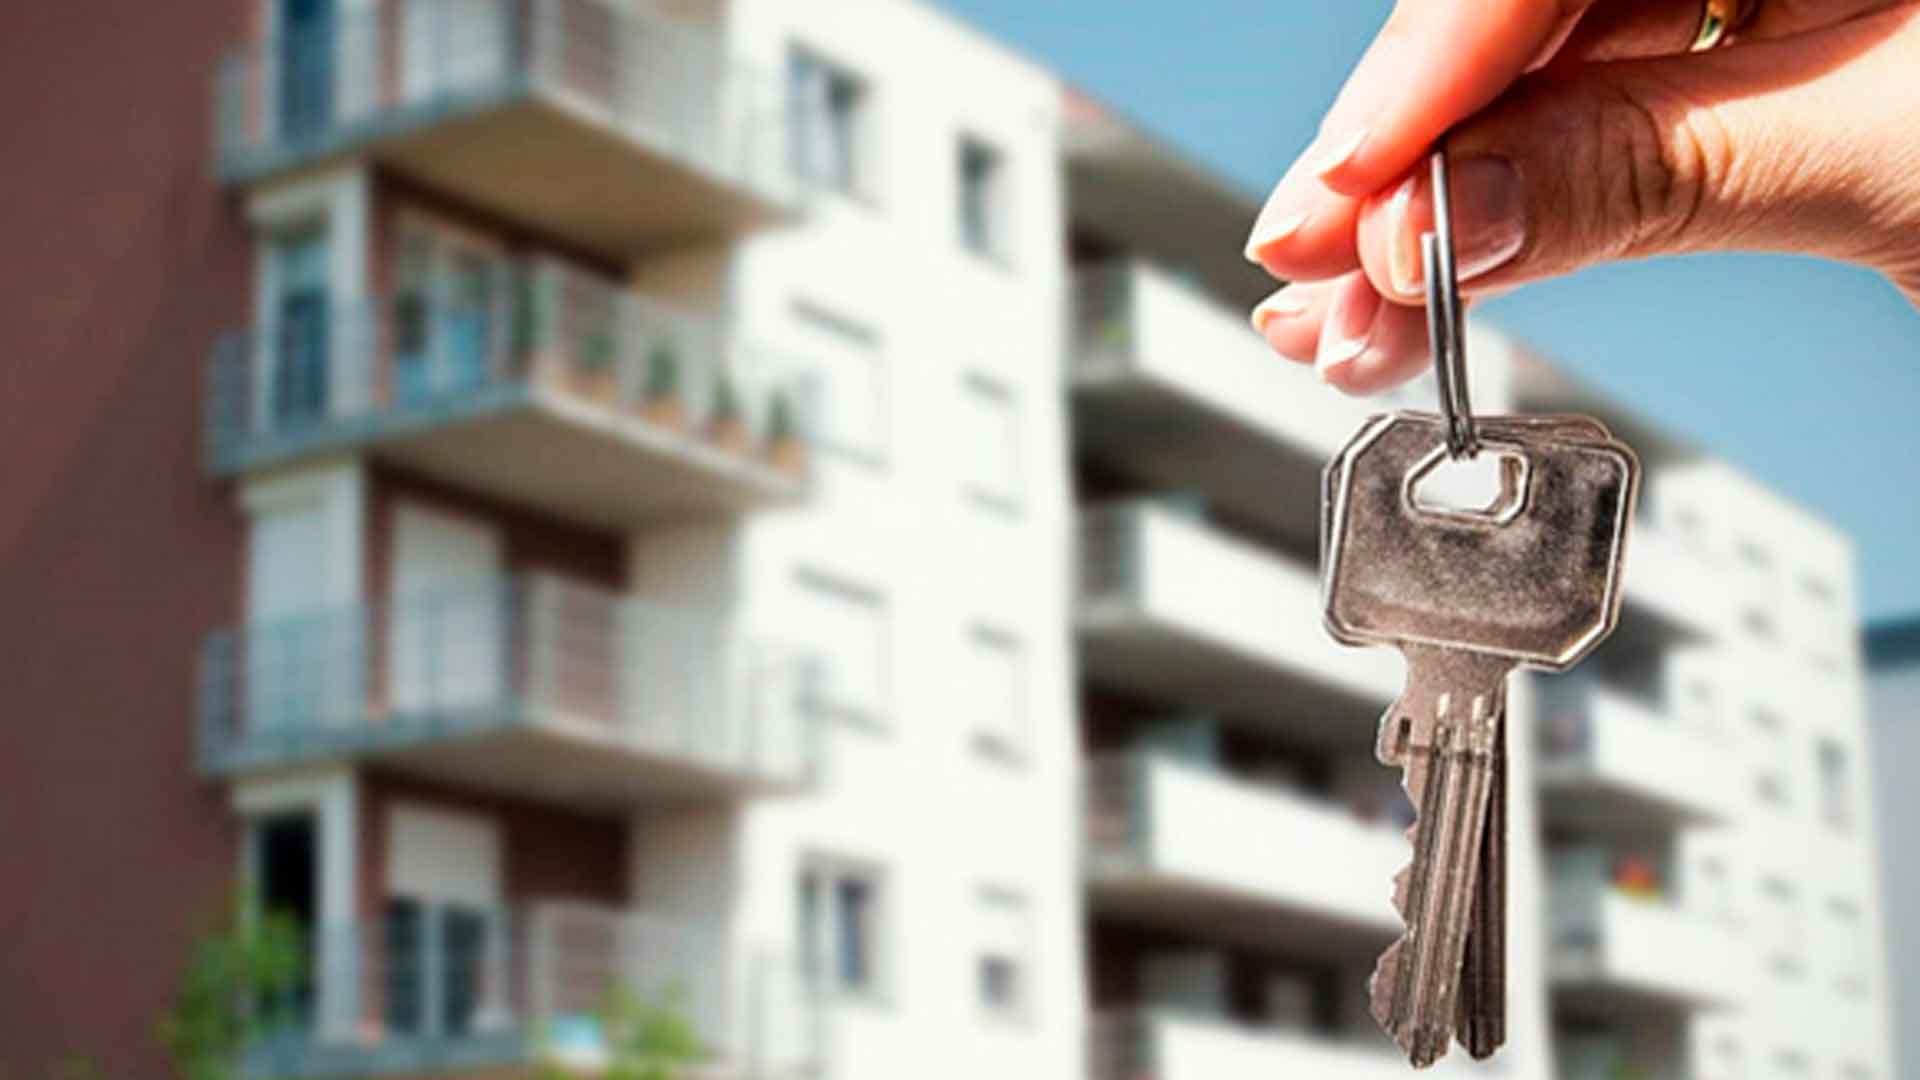 Новая жилплощадь. Ключи от квартиры. Дом ключи от квартиры. Ключи от квартиры в руке. Квартира ключи.